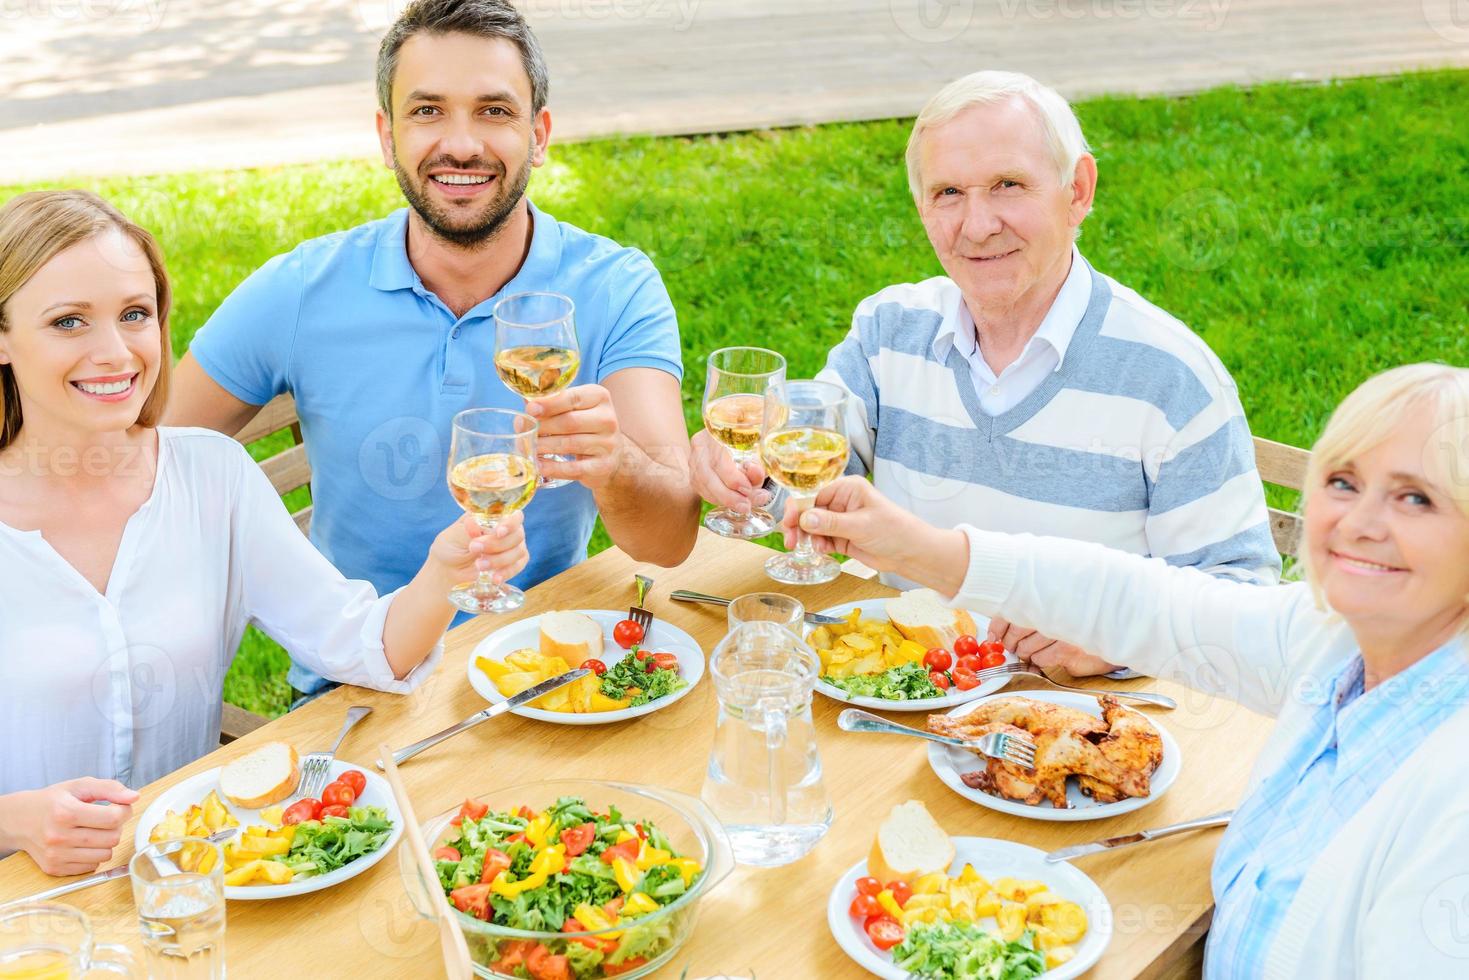 grillage familial avec du vin. vue de dessus d'une famille heureuse assise à la table à manger et portant un toast avec du vin photo